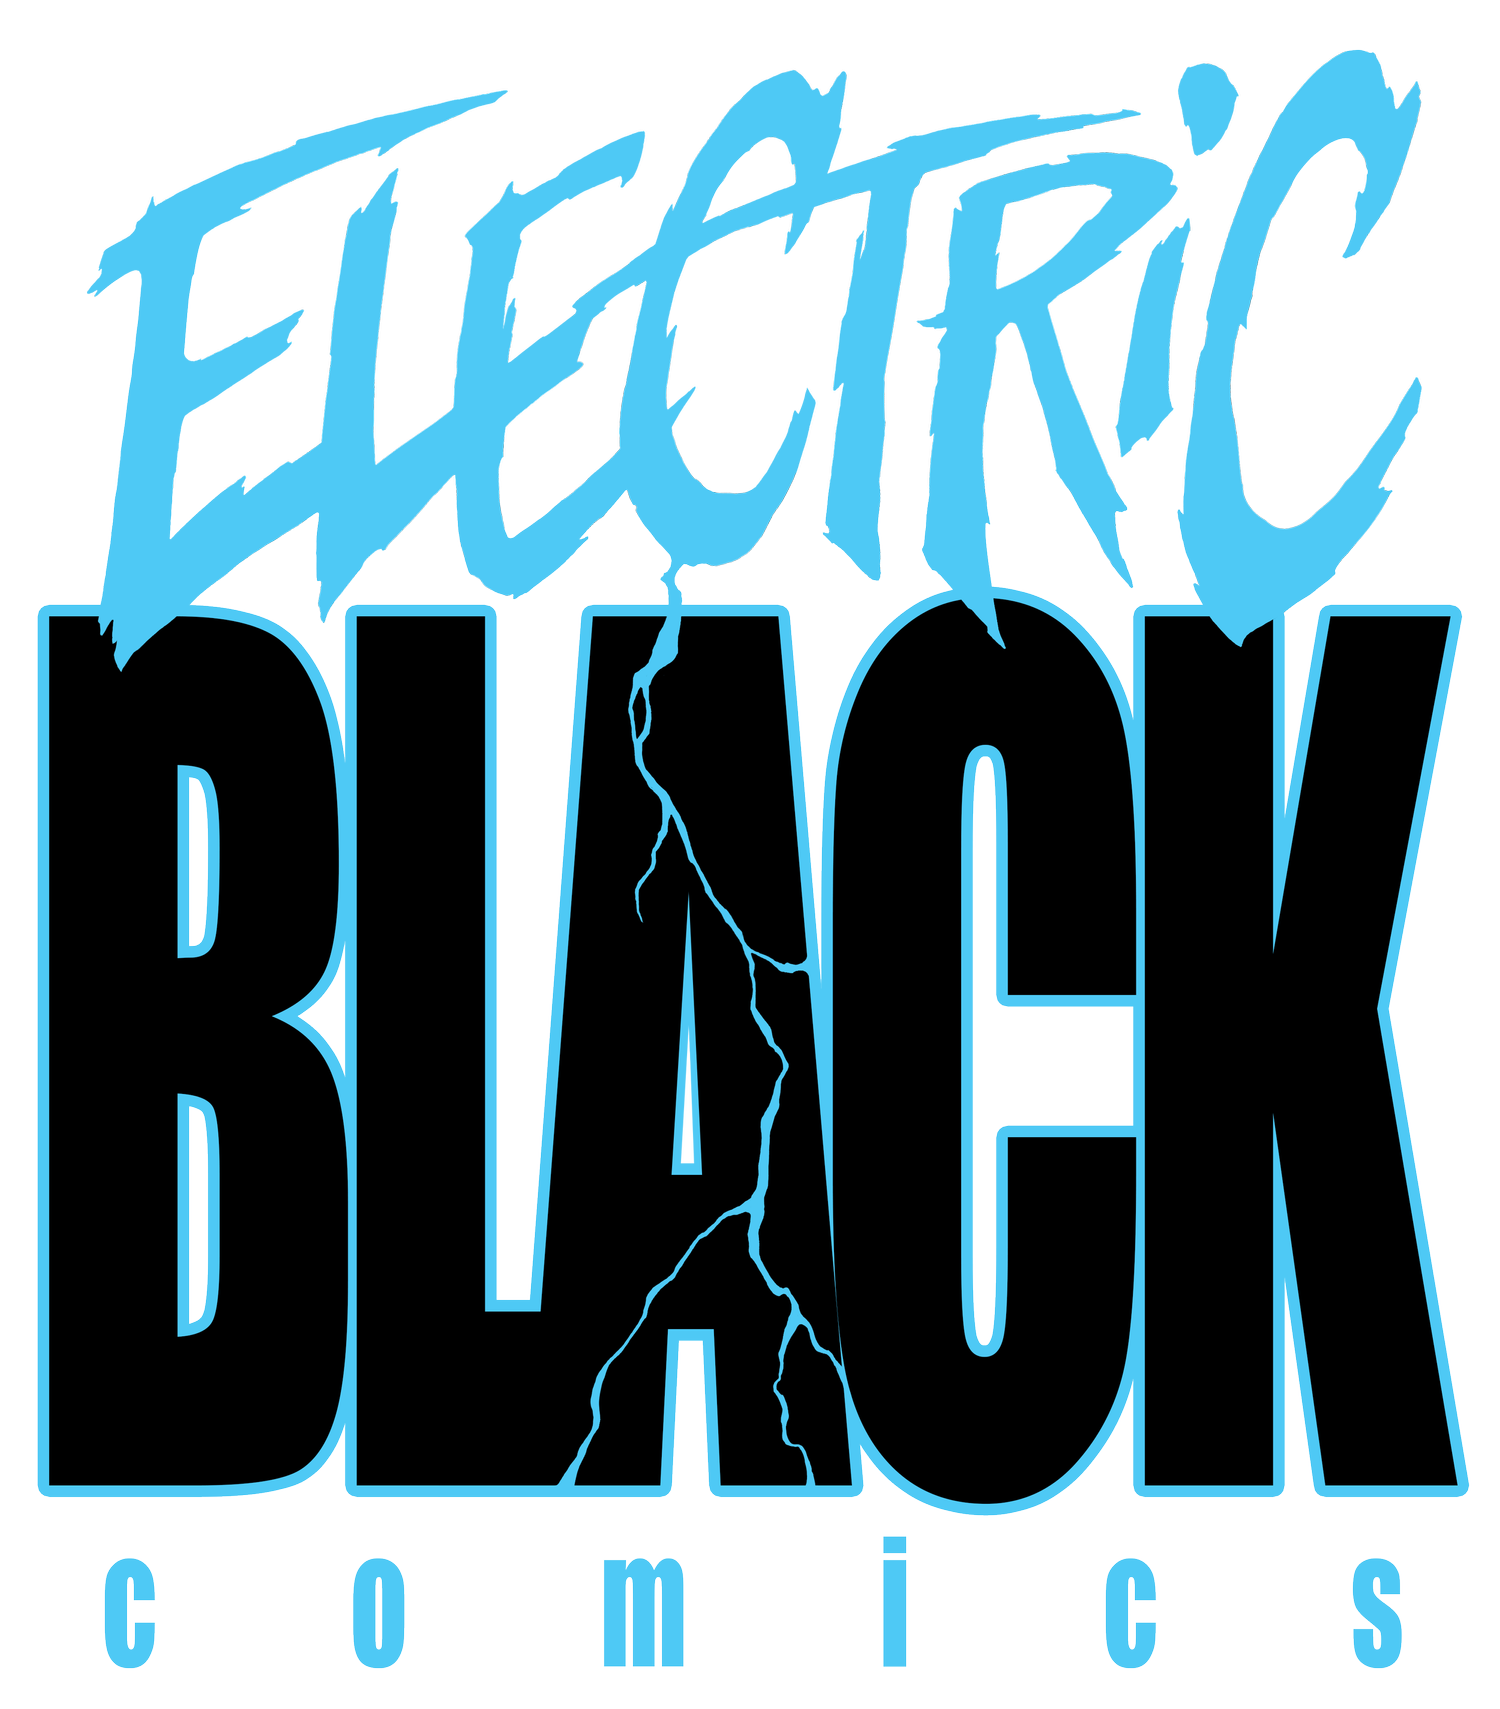 Electric Black Comics